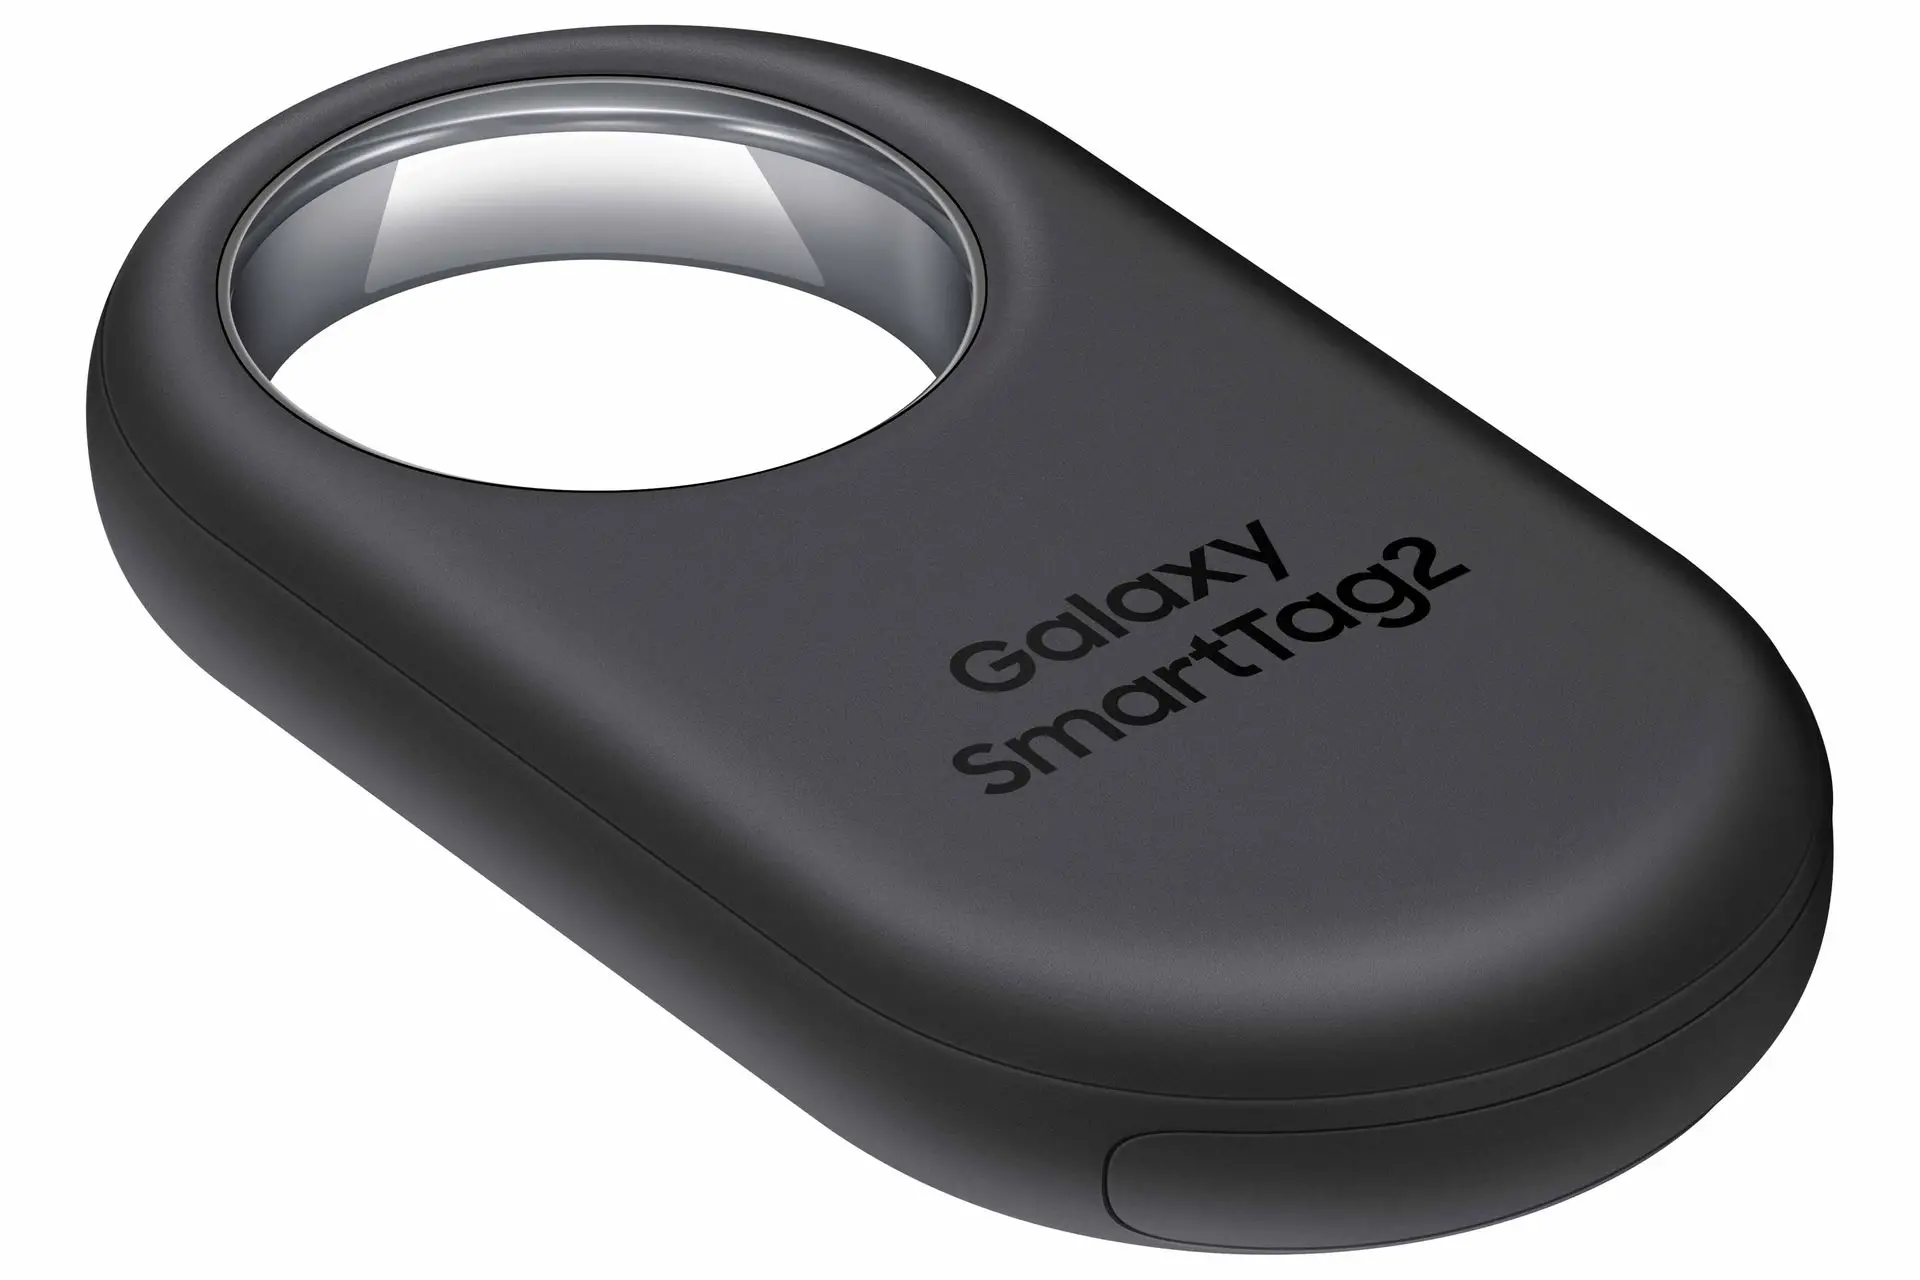 Samsung SmartTag2: Özellikleri ve dahası